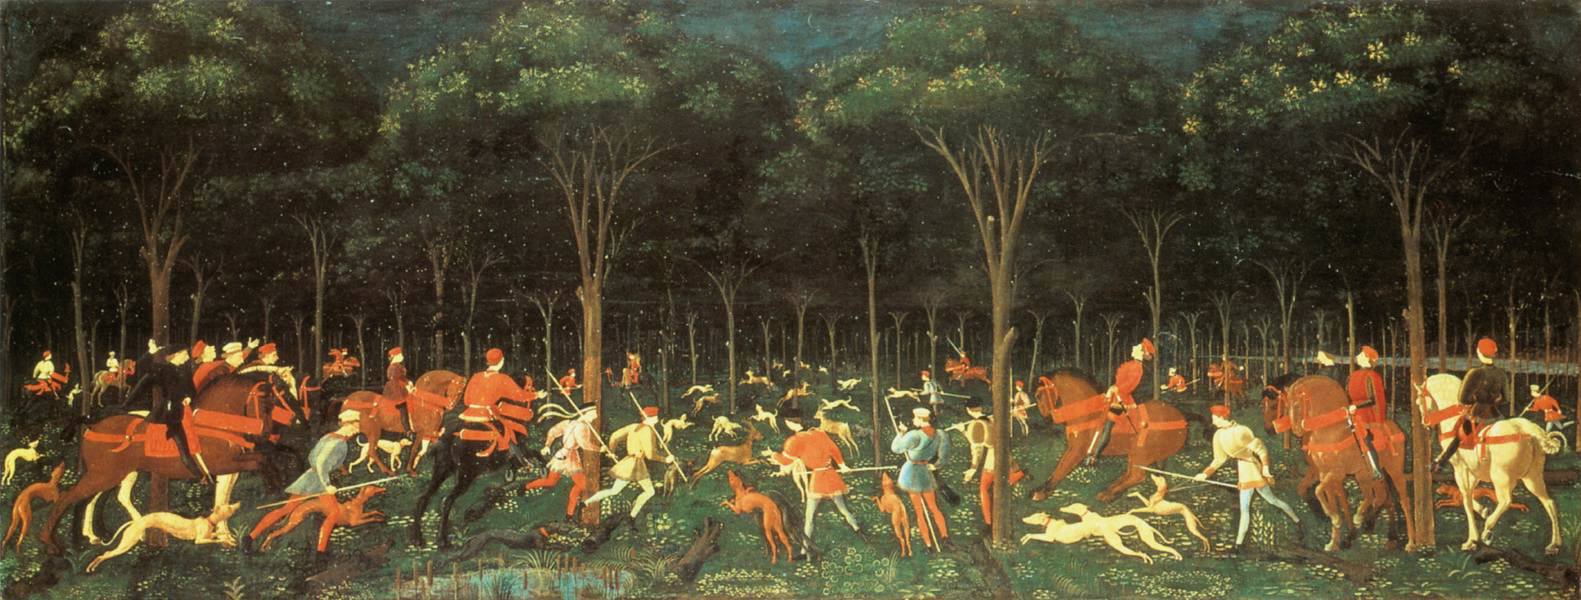 森林狩猎 by 保罗 乌切洛 - 约1470年 - 65 cm × 165 cm 阿什莫林博物馆